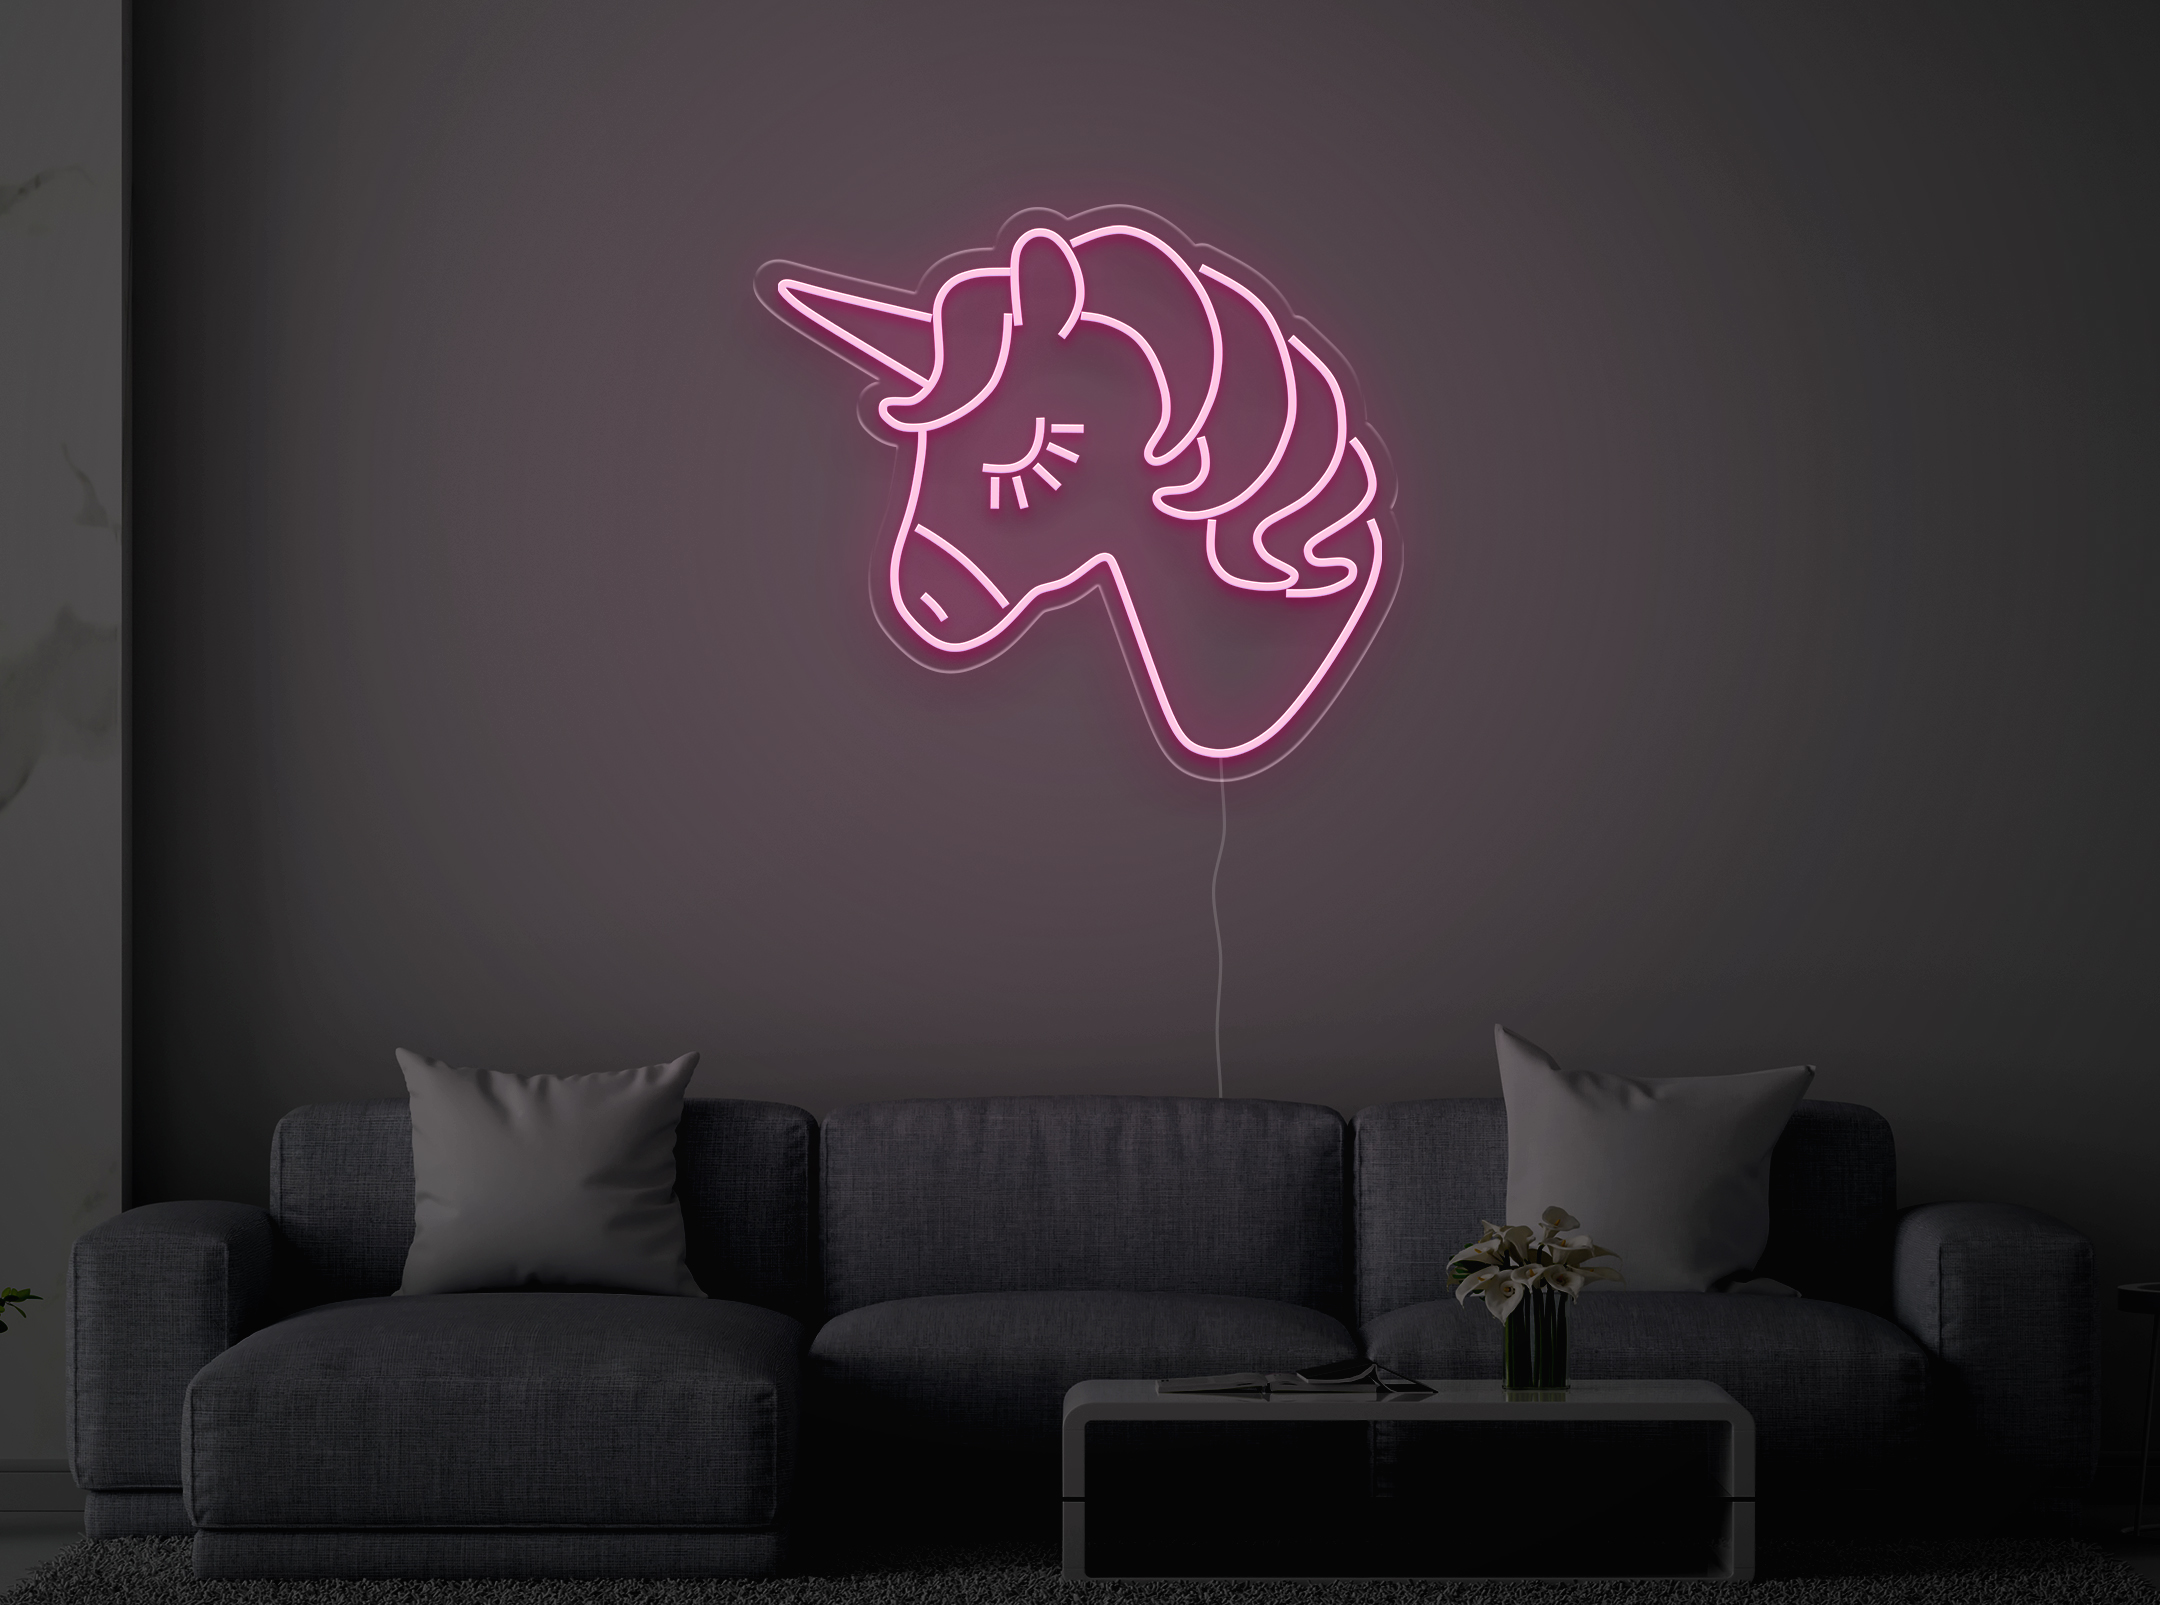 Unicorn - LED Neon Sign